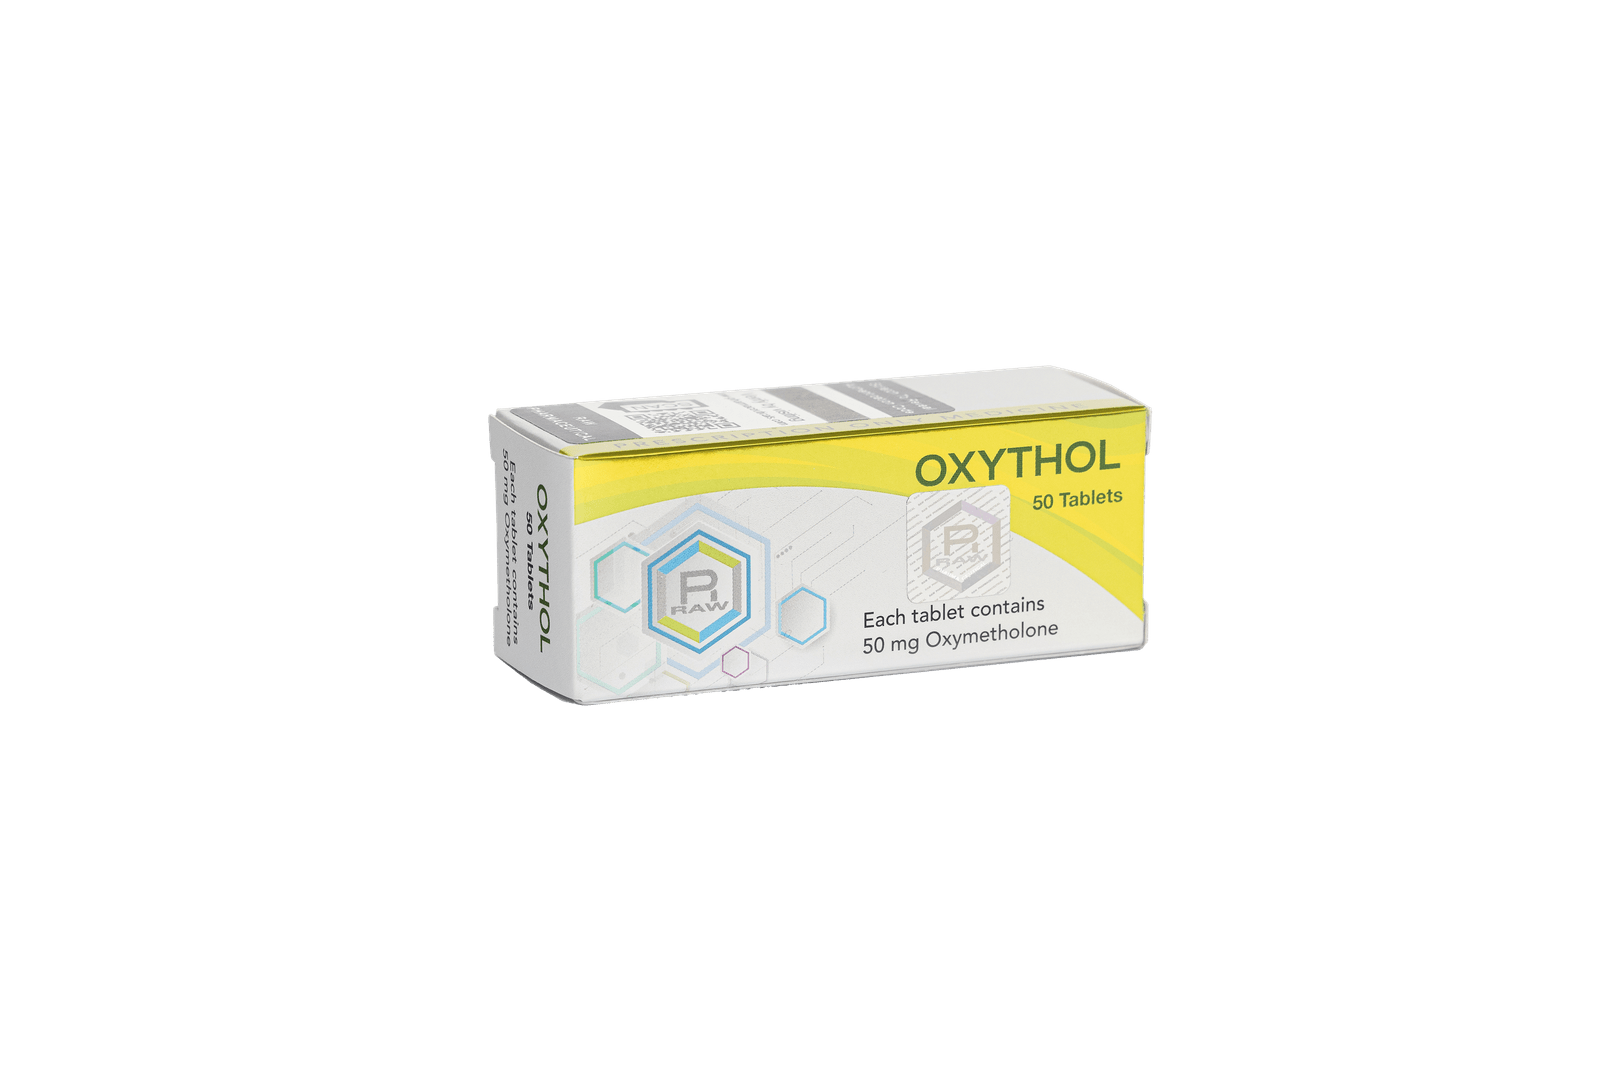 Raw Pharmaceuticals OXYTHOL 50